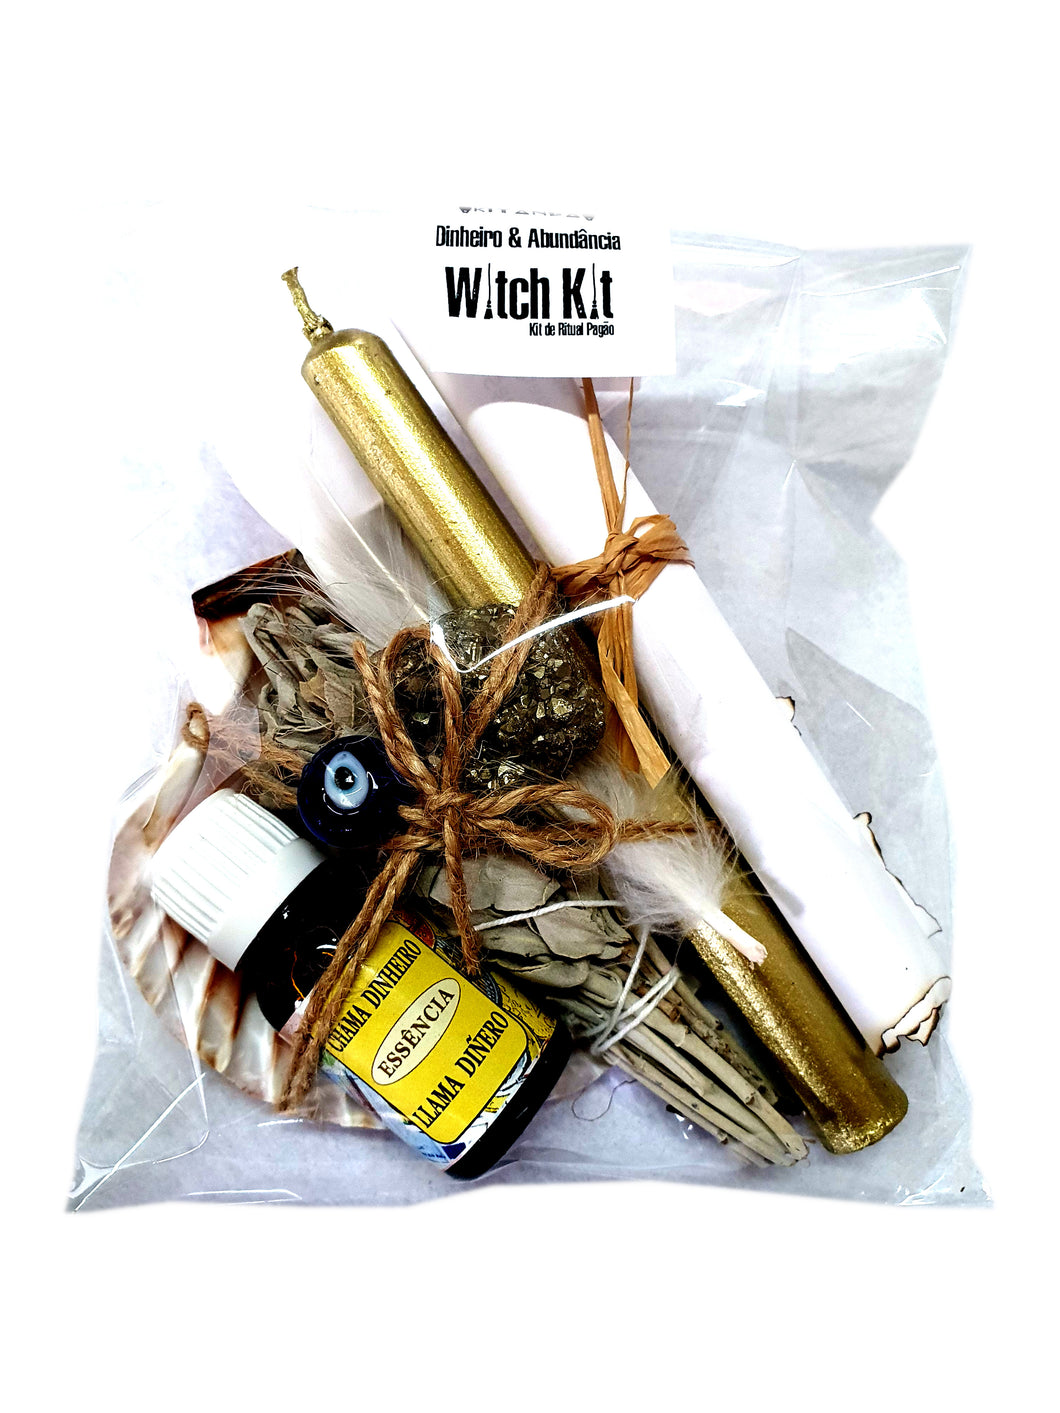 Kit de Ritual Witch Kit - Dinheiro & Abundancia com Instruções